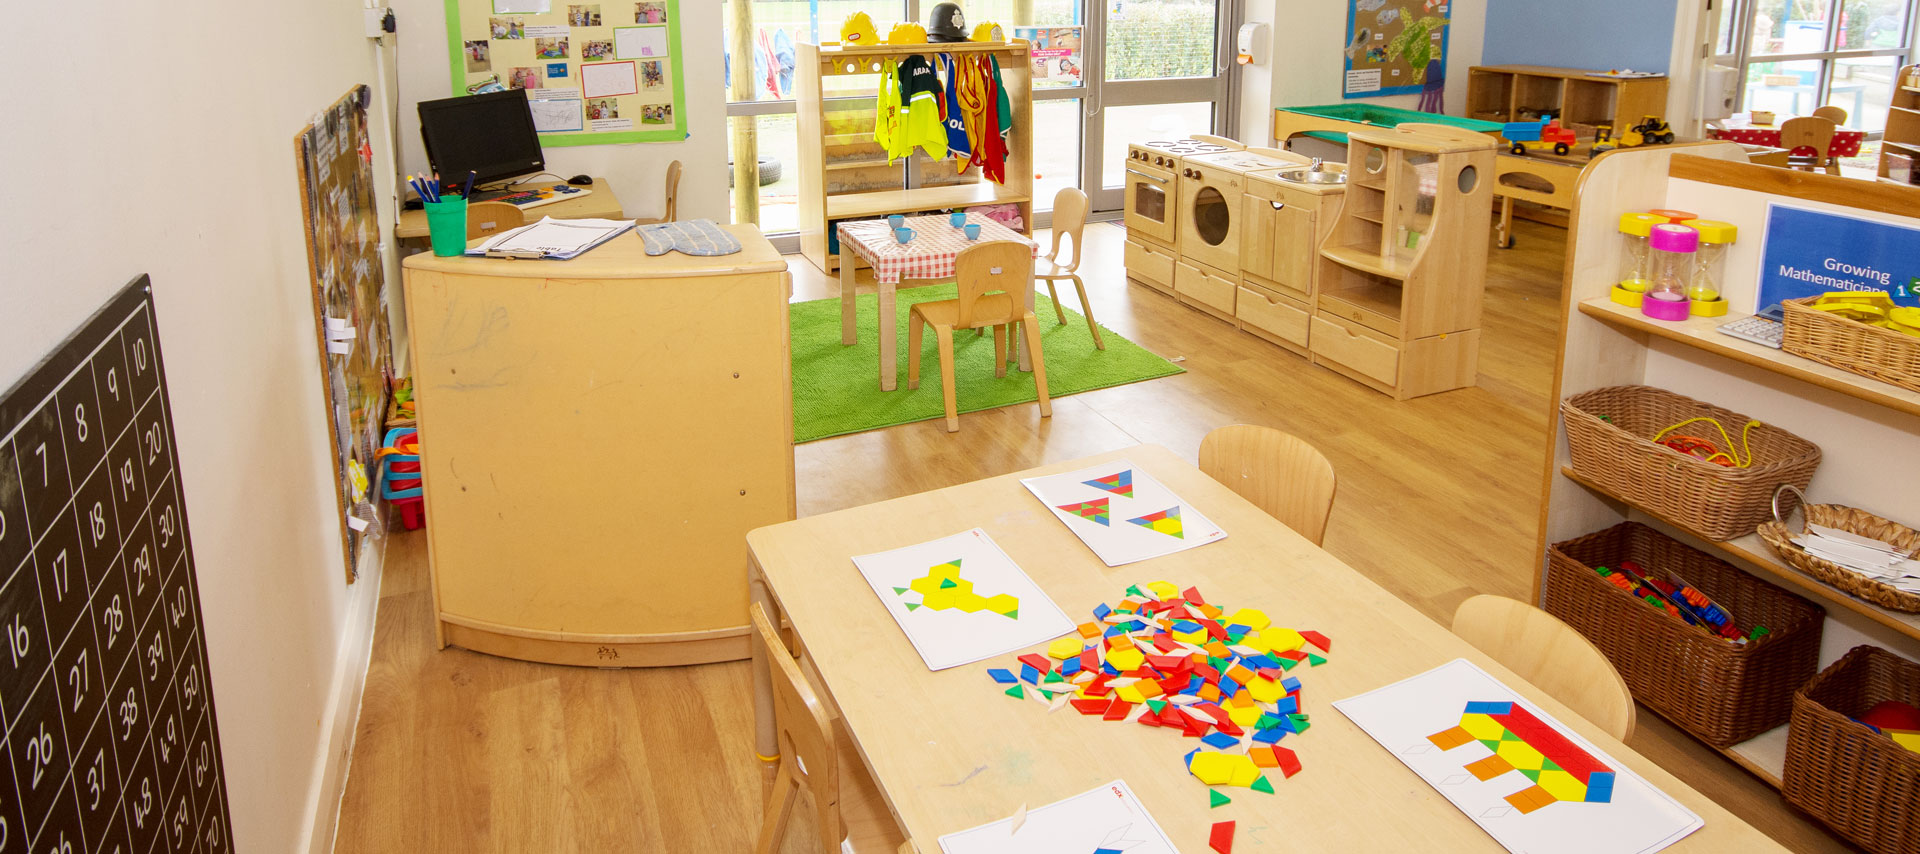 Cambridge Science Park Day Nursery and Preschool